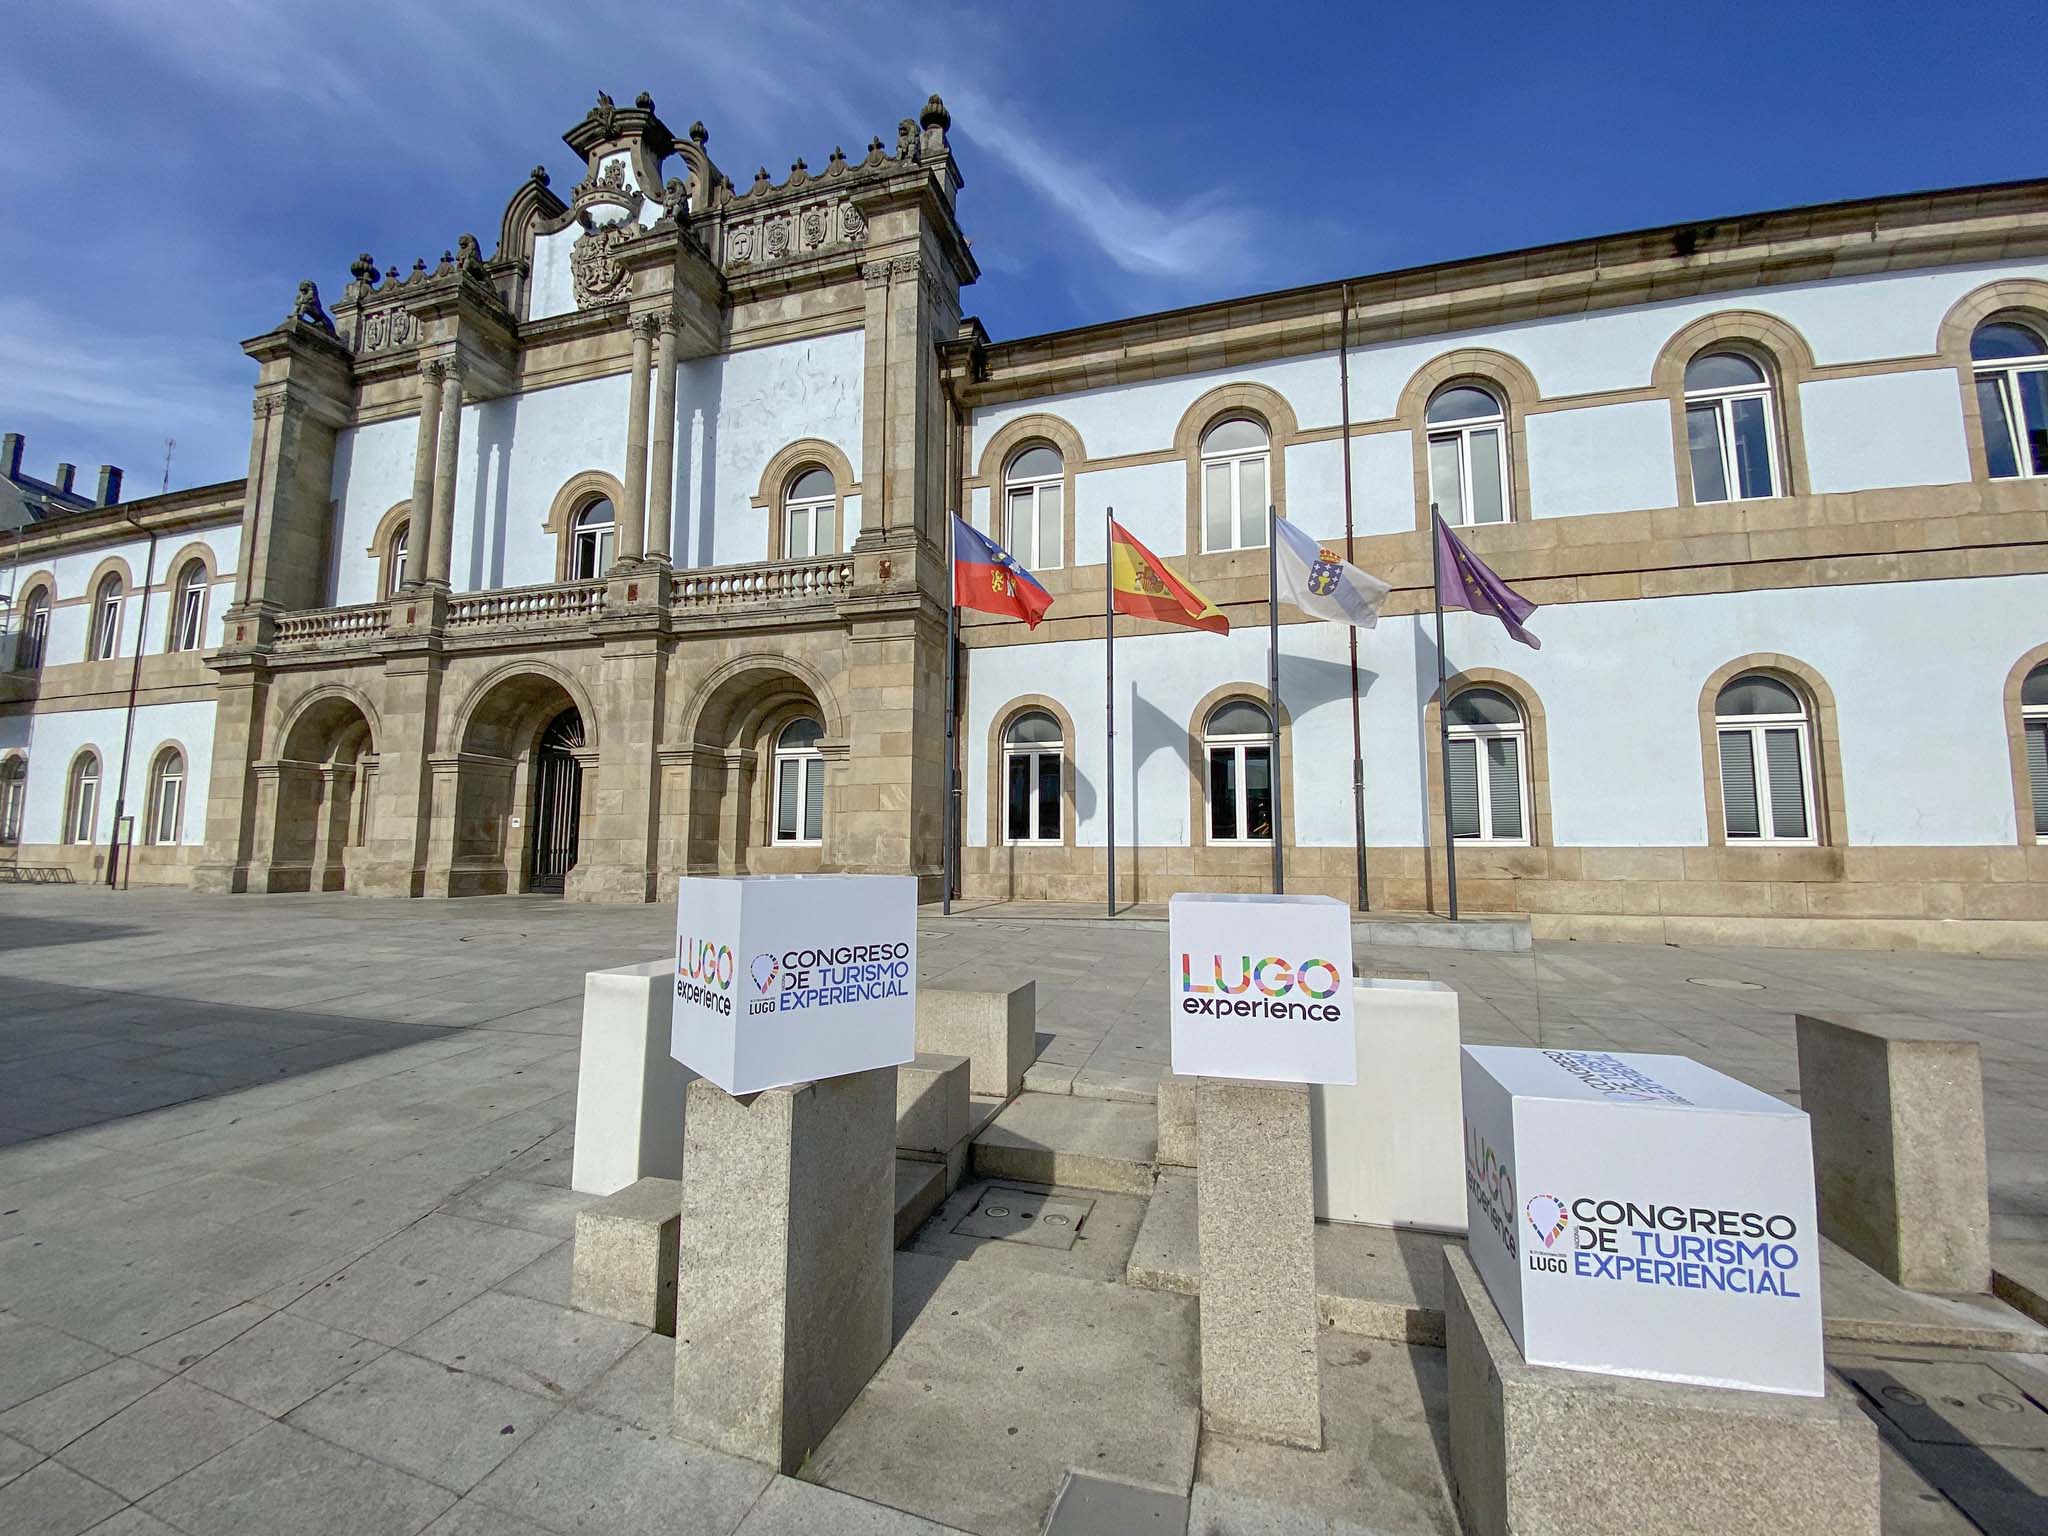 Lugo epícentro del turismo experiencial con un congreso y experiencias por la provincia del 16 al 20 deseptiembre.